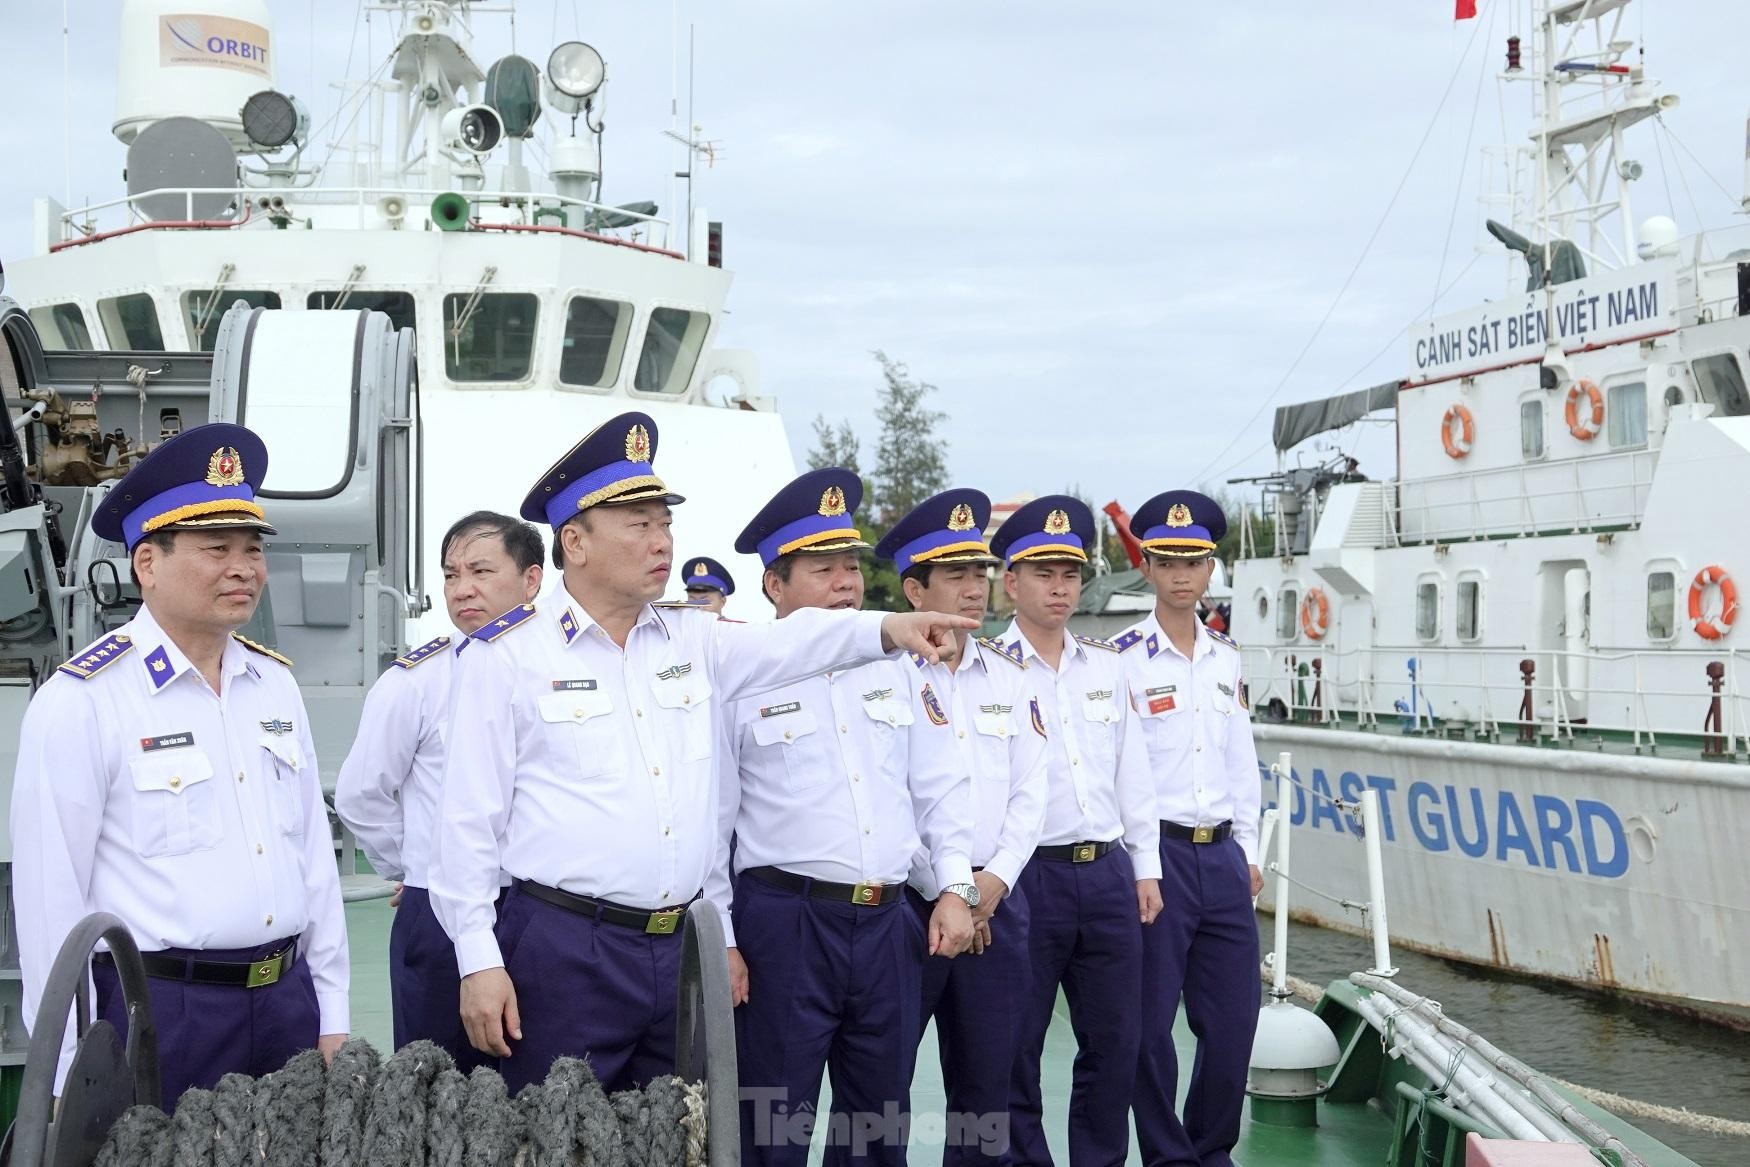 Tư lệnh Lê Quang Đạo: Cảnh sát biển Việt Nam đã phát triển vượt bậc